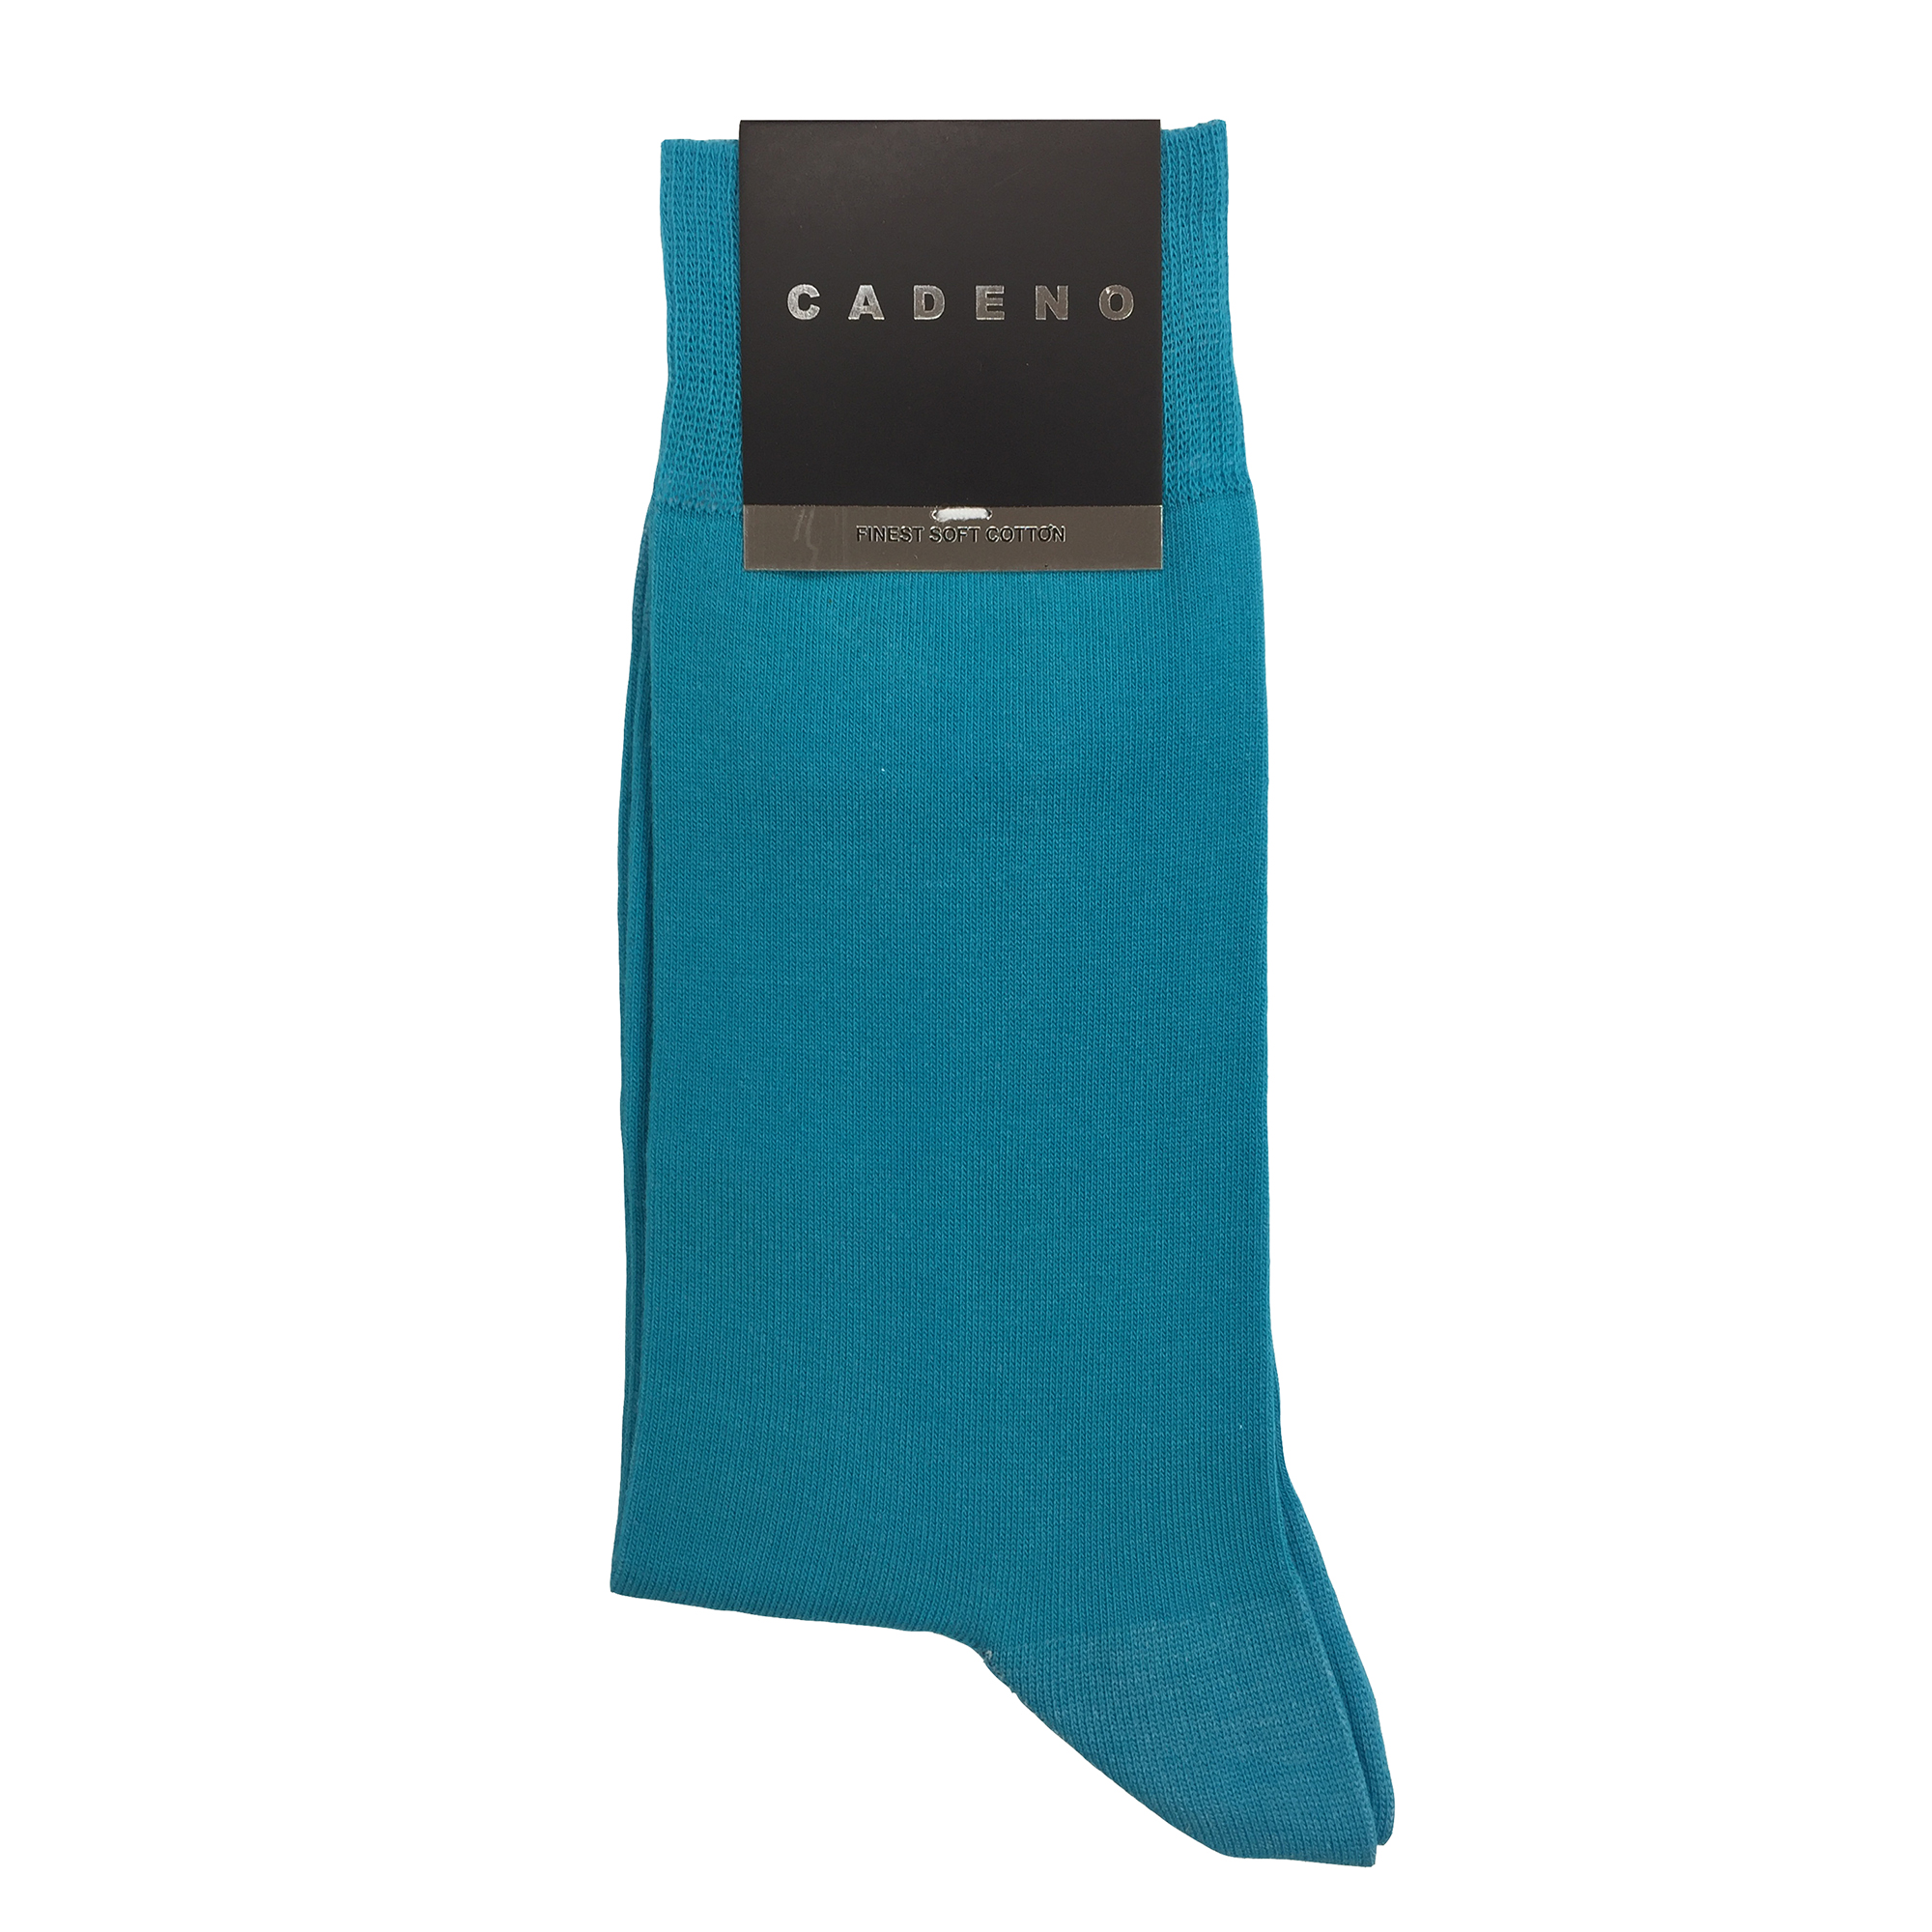 جوراب مردانه کادنو مدل CAF1001 رنگ آبی روشن